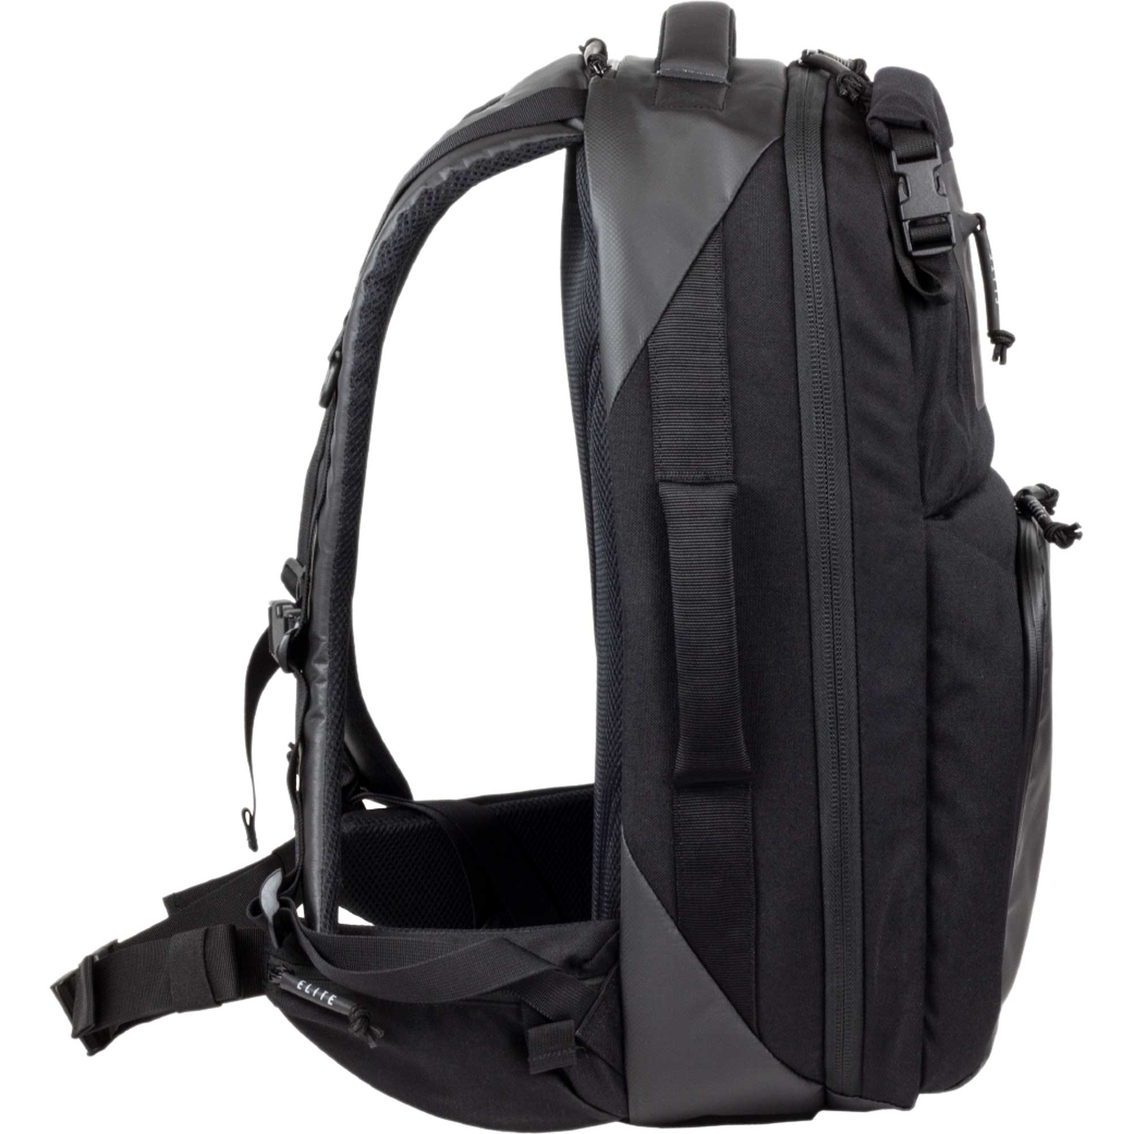 Elite Survival Stealth SBR Backpack - Image 3 of 5